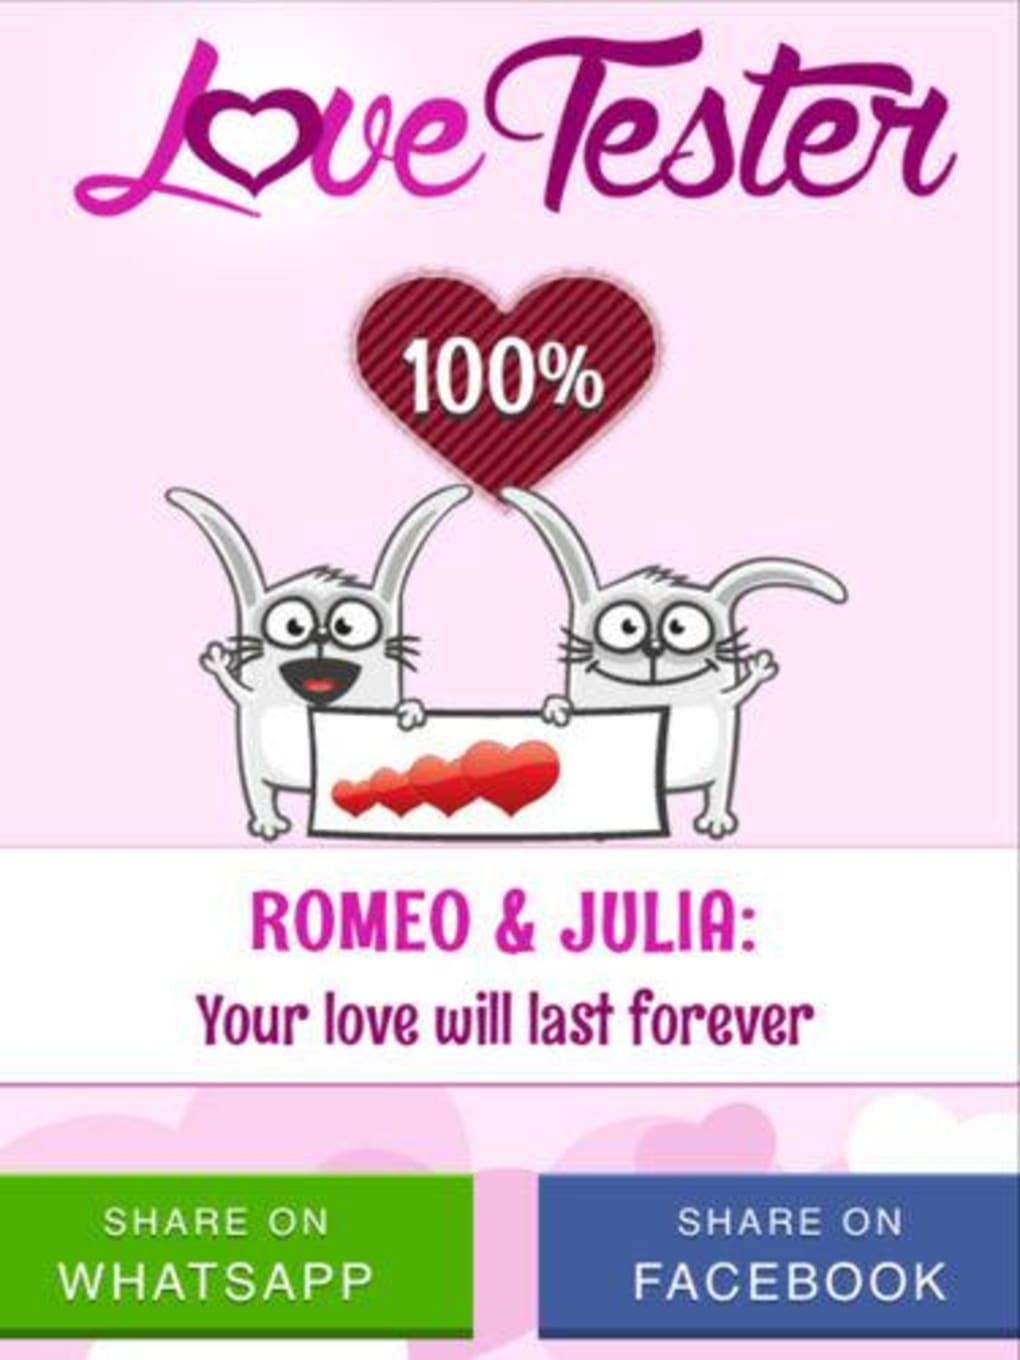 Publish Love Tester Julie on your website - GameDistribution